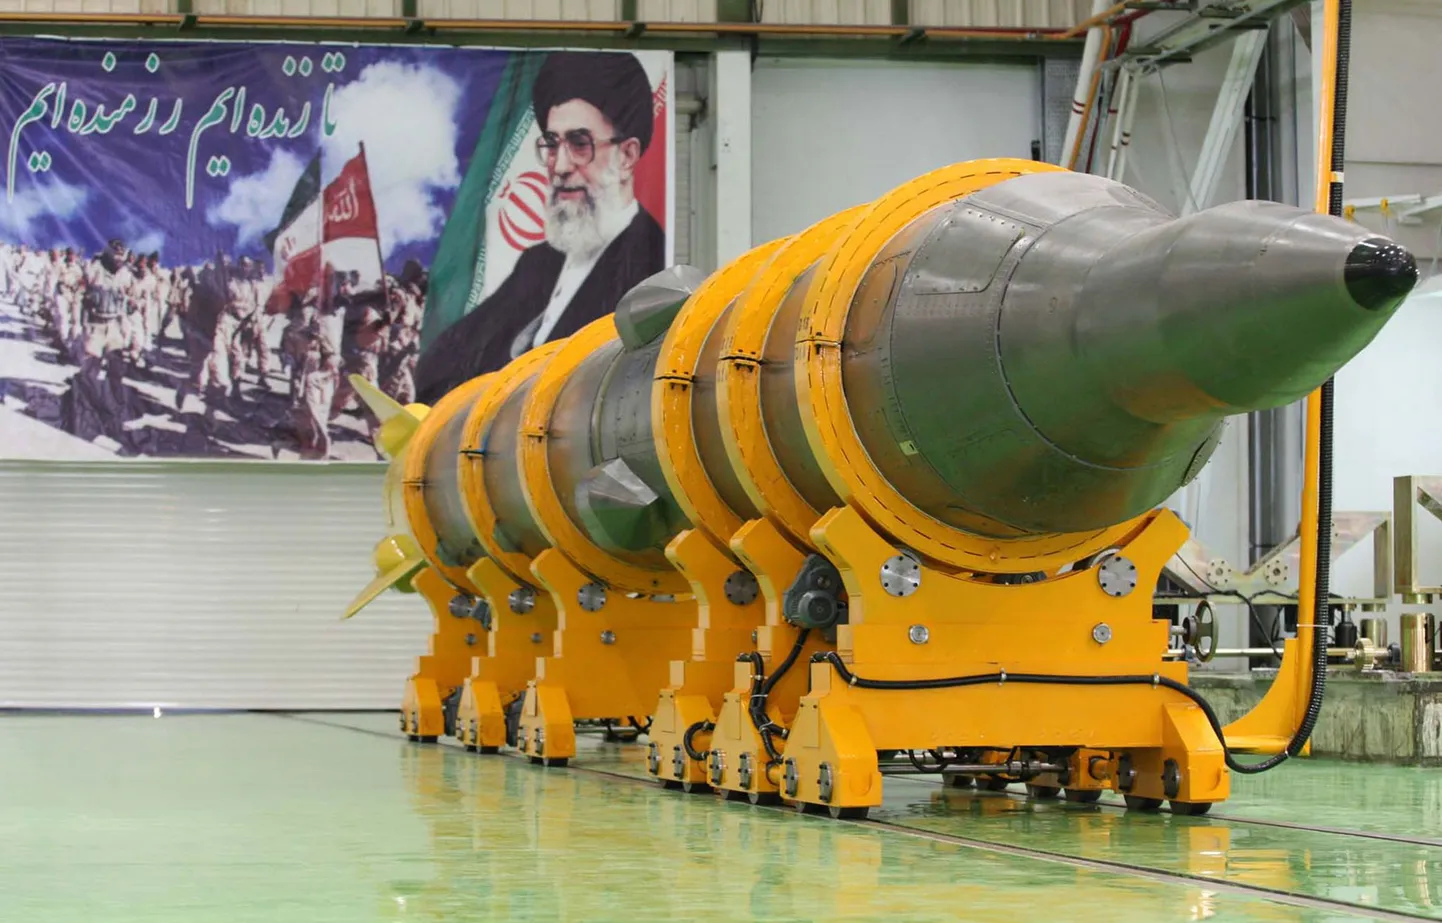 В мае Иран заявил об успешном испытании собственной ракеты "Седжил-2", что заставило нервничать Израиль и Европу.